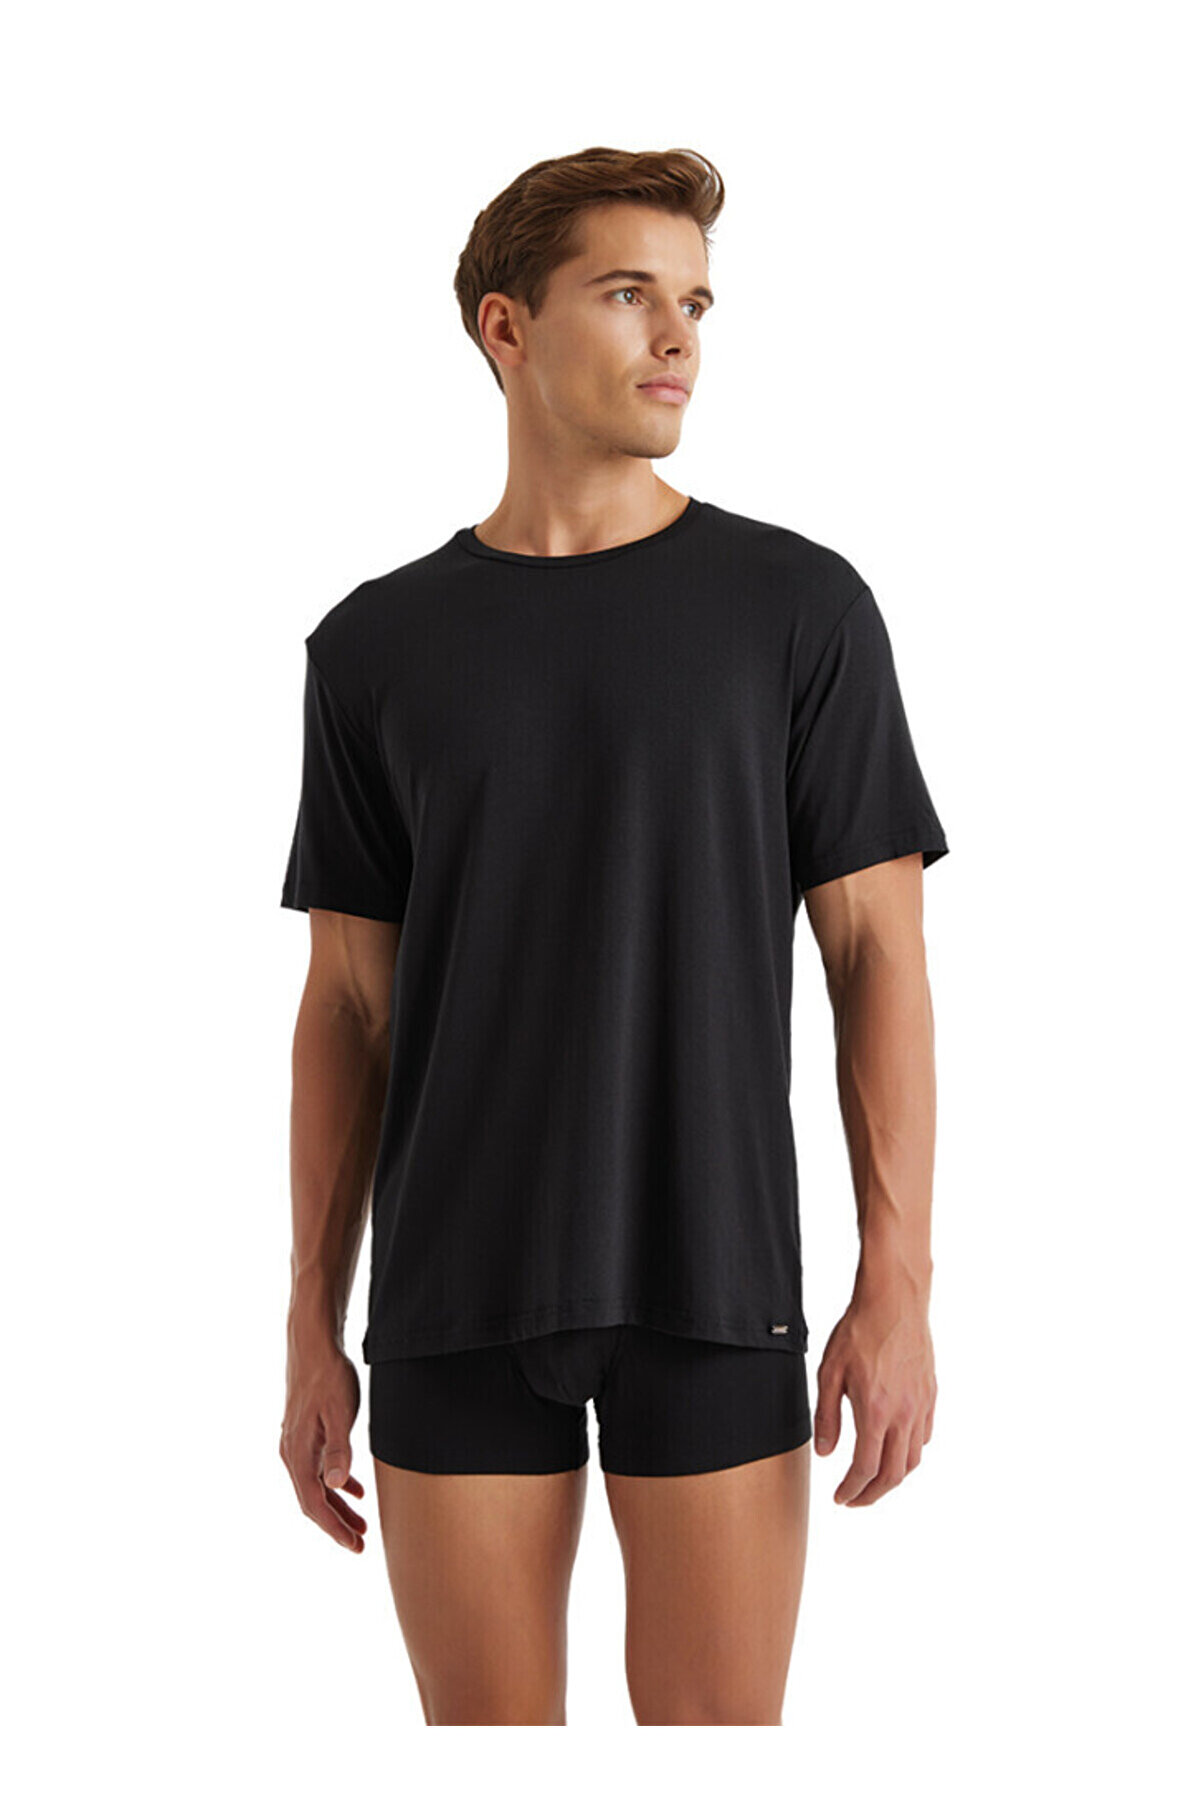 Blackspade Blakspade Erkek Silver T-shirt-9306-siyah